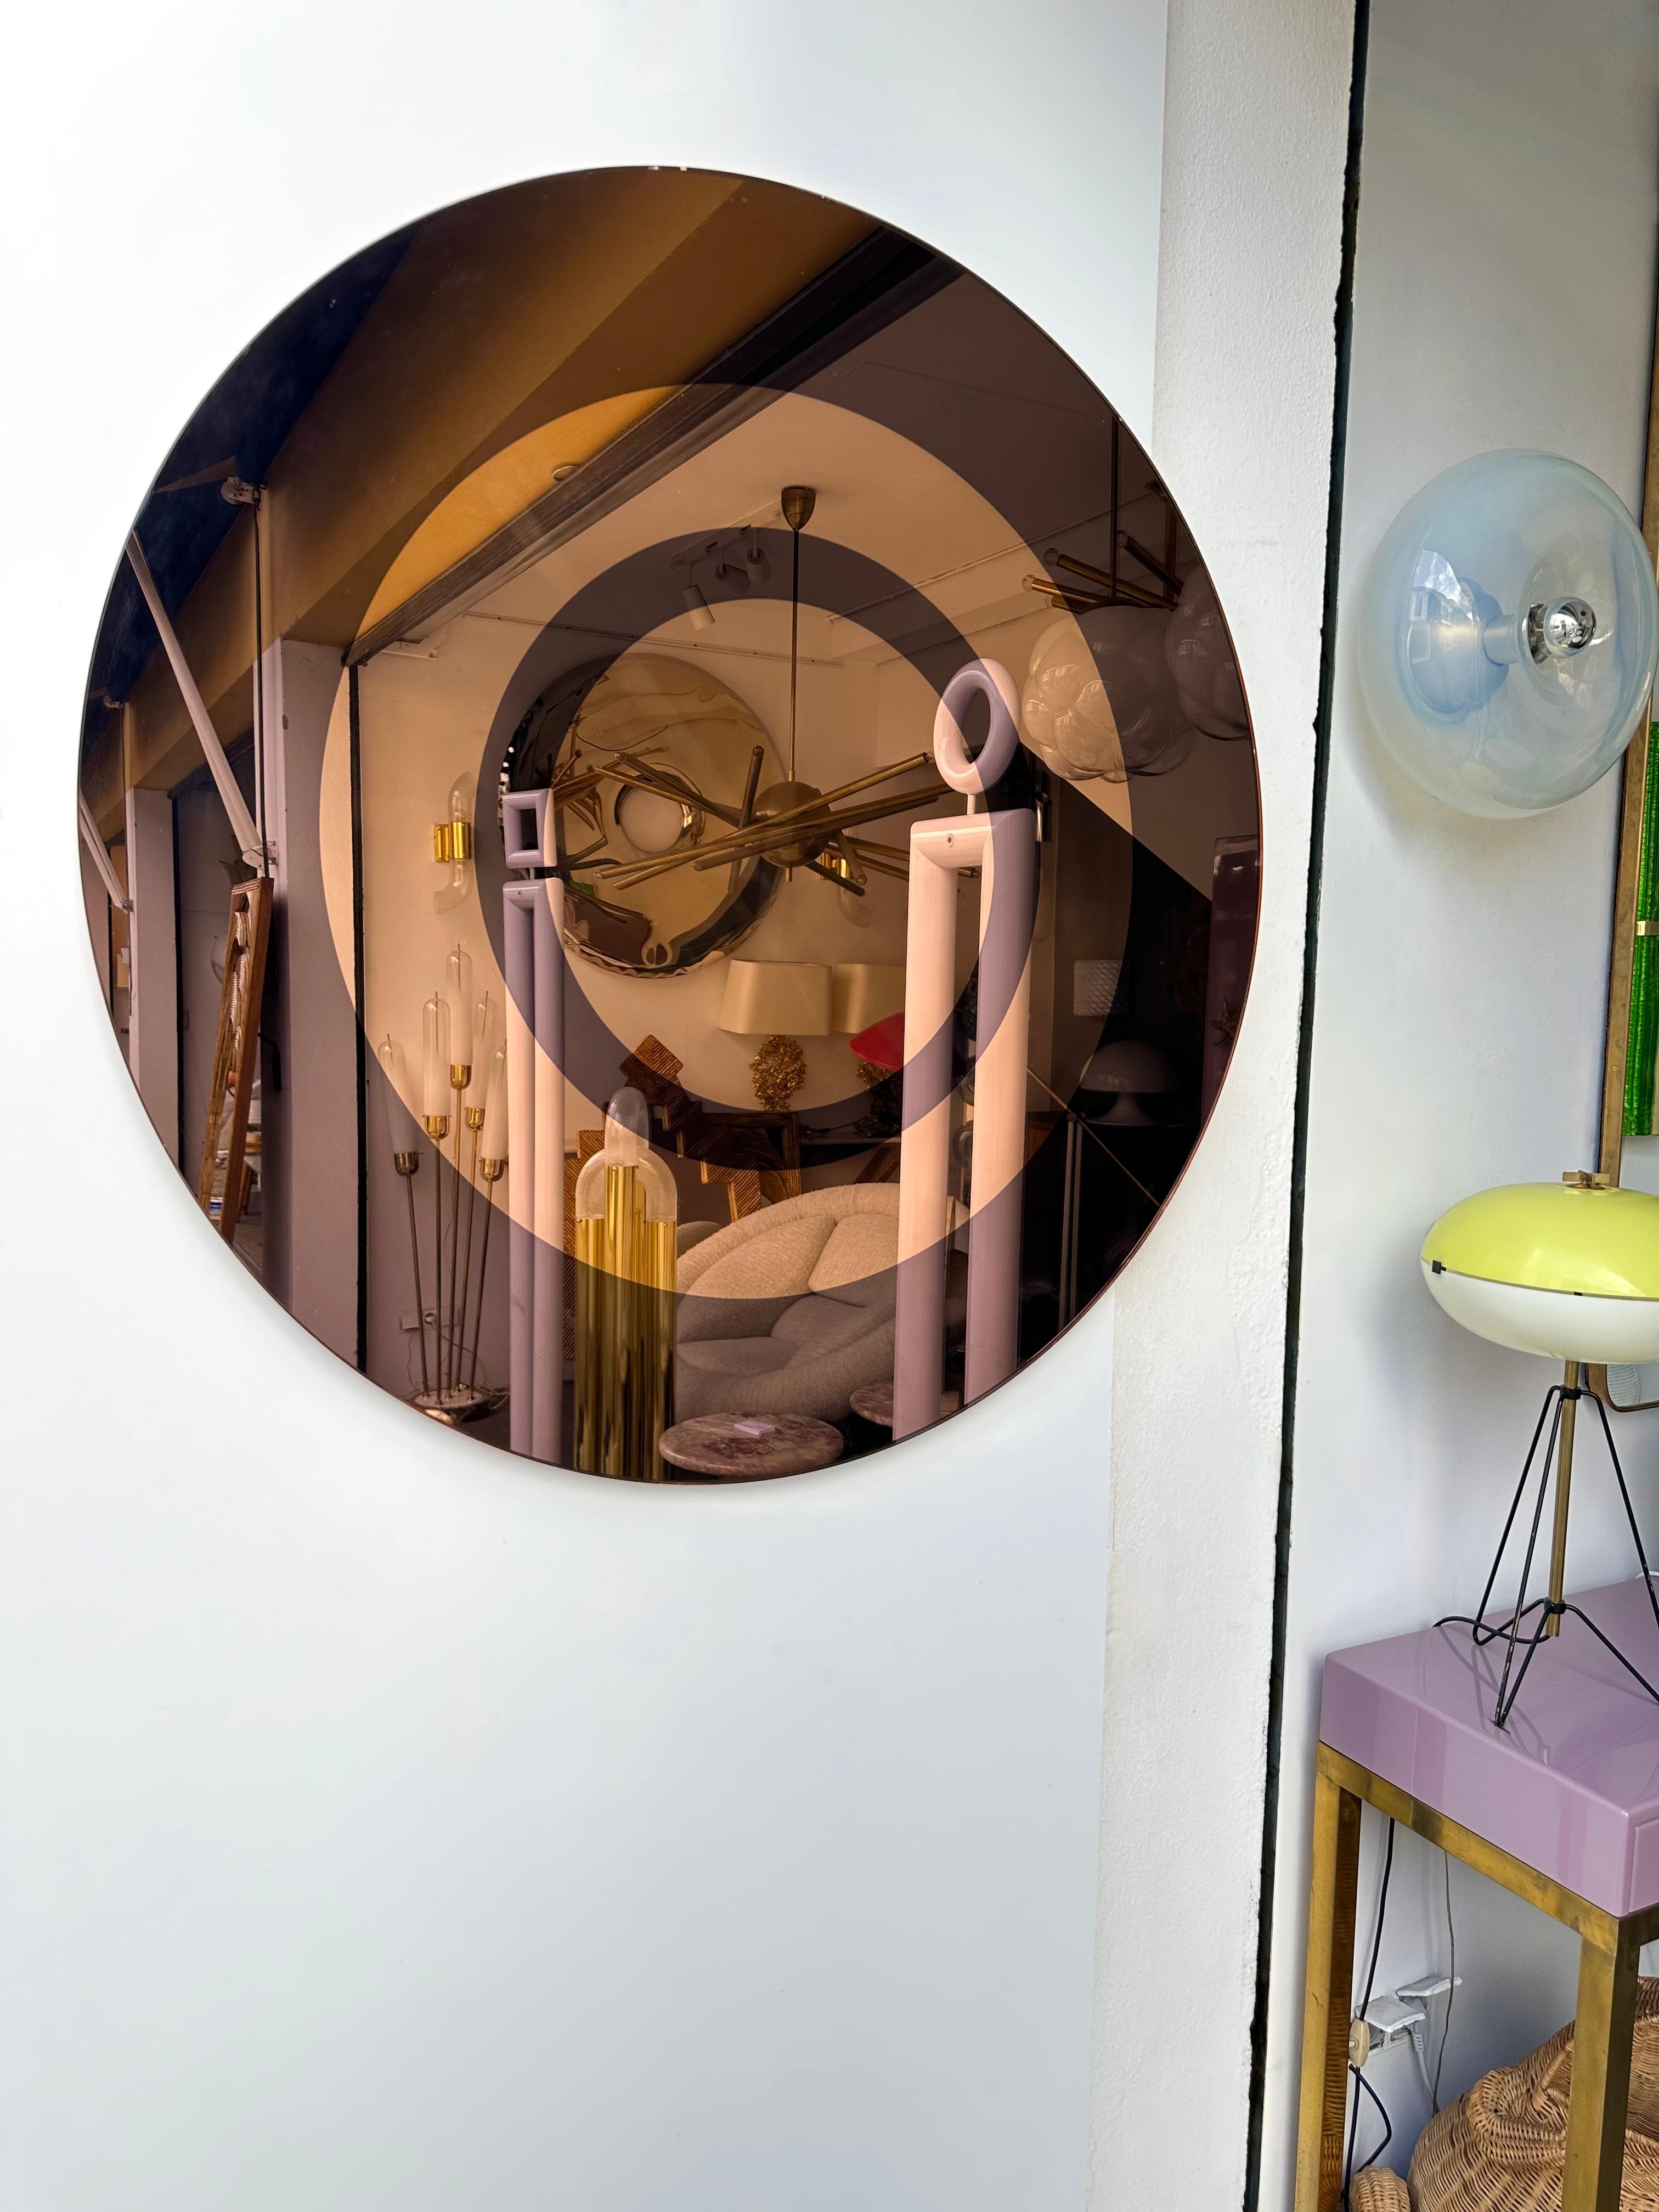 Rare miroir mural circulaire de la manufacture de design italienne Cristal Art à Turin. Verre de couleur brun fumé, cuivre doré. Cette pièce est référencée dans le livre Cristal Art. Une fabrication célèbre comme Fontana Arte.